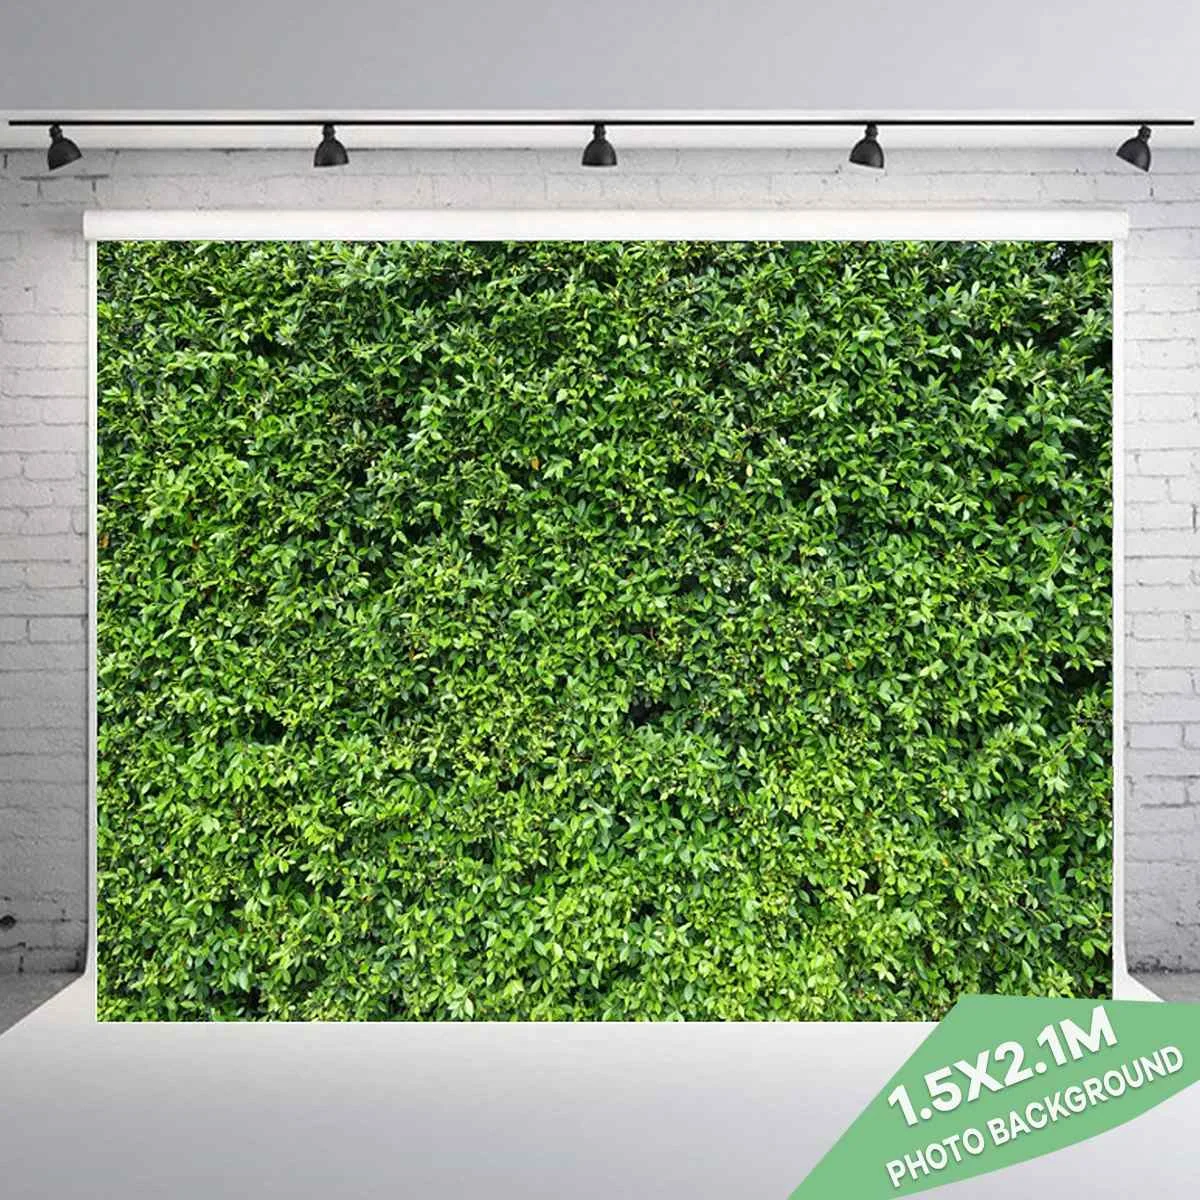 

Фон для портретной студийной фотосъемки 1,5 м x 2,1 м 5 футов x 7 футов с изображением весенней зеленой травы газона пейзажа